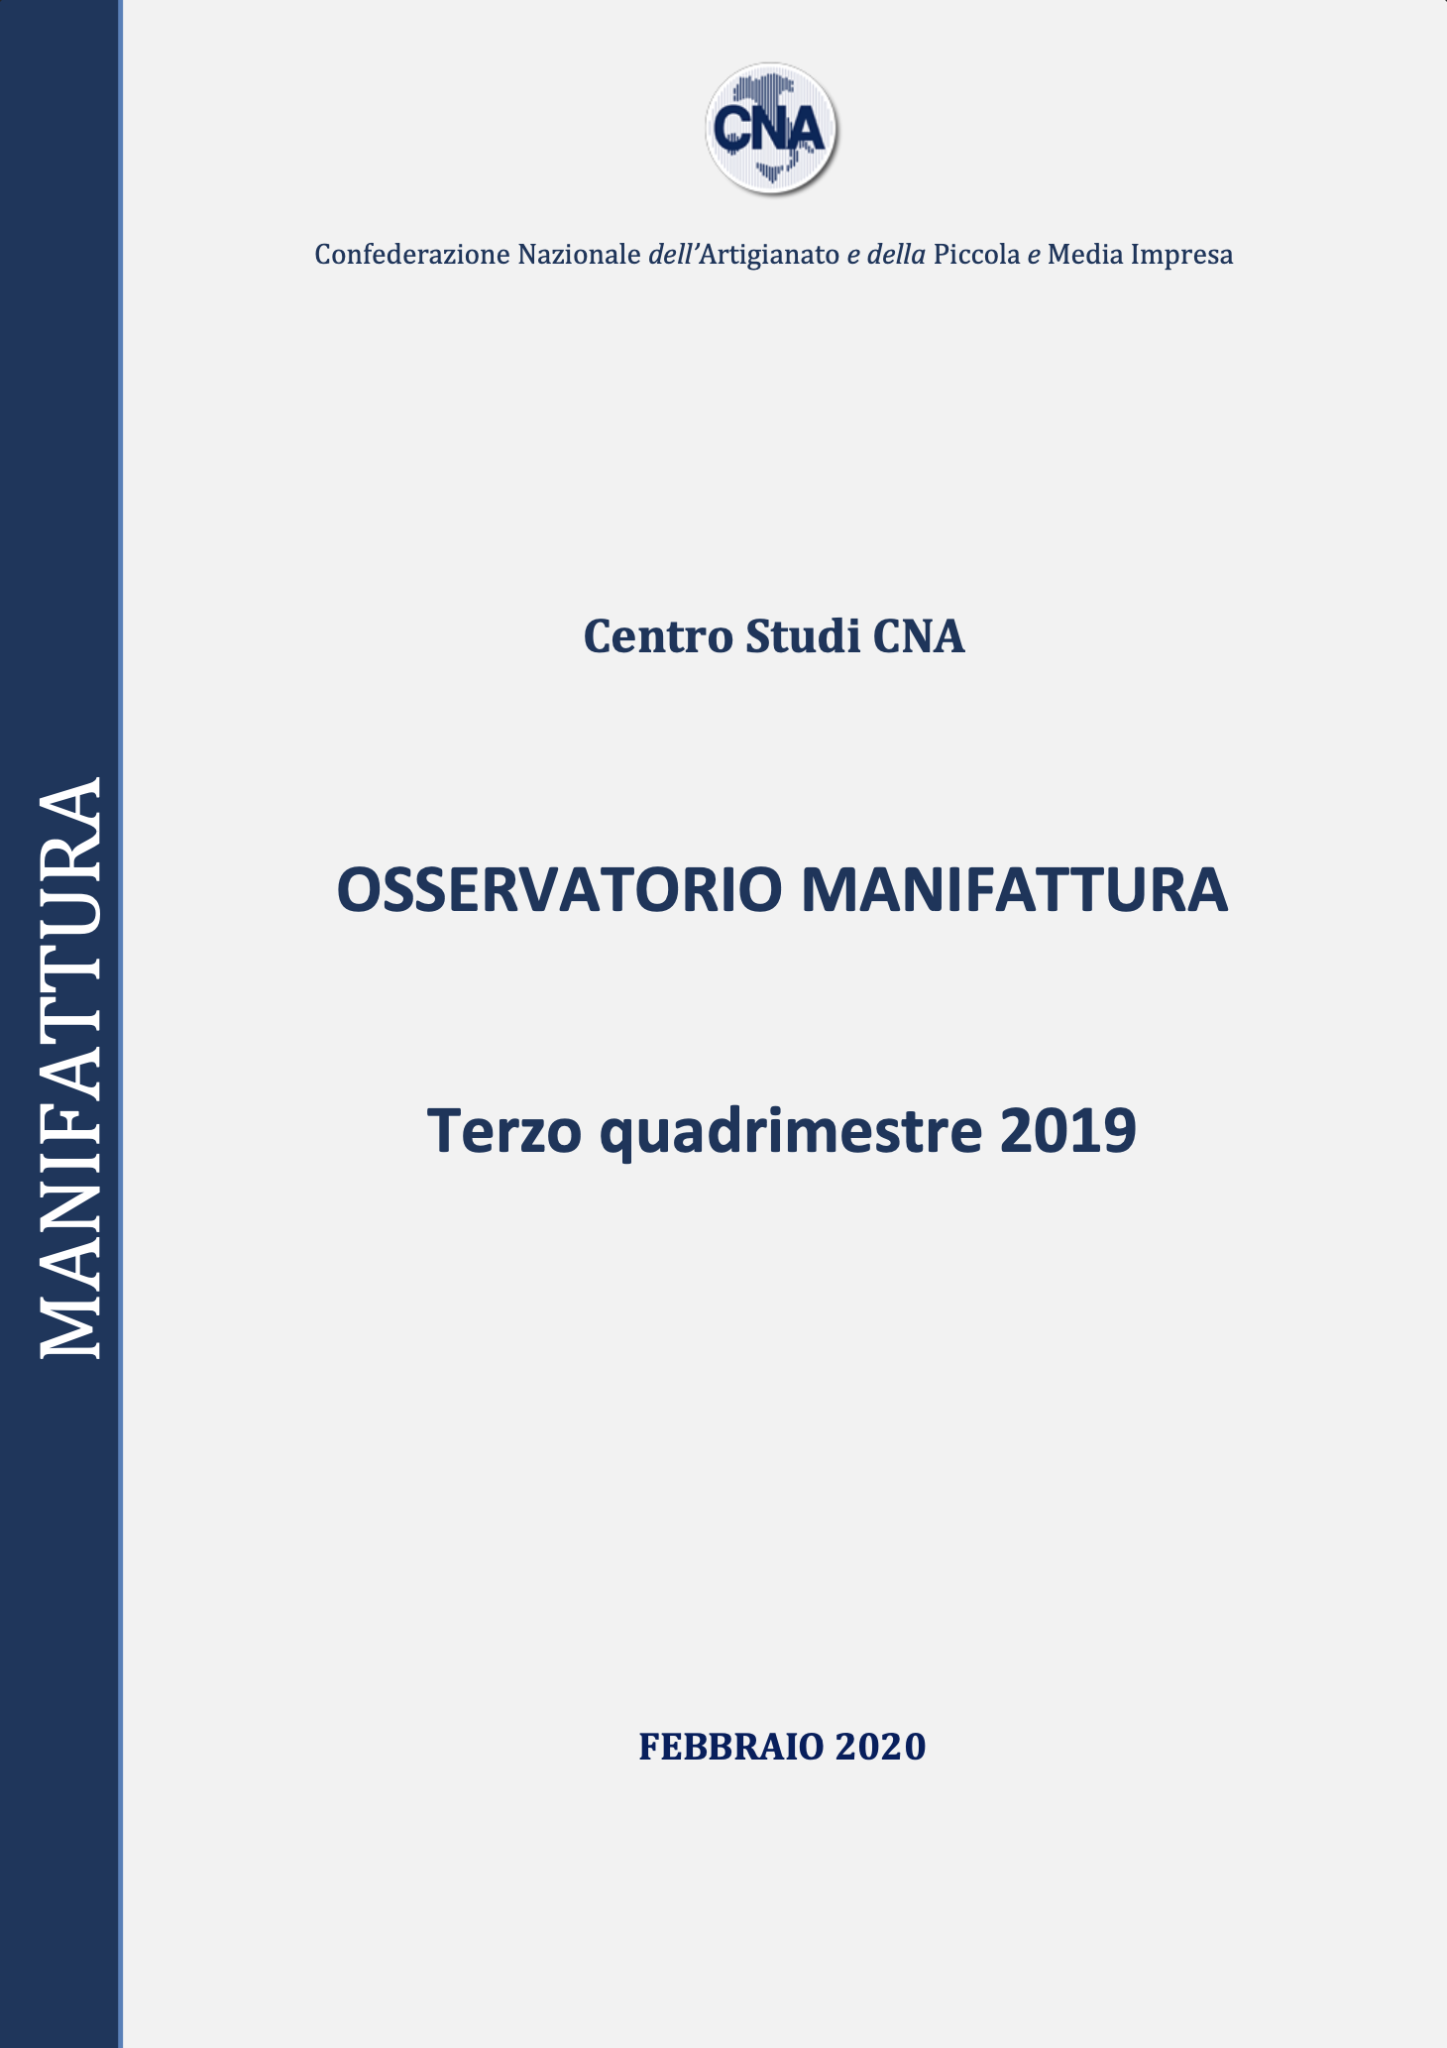 OSSERVATORIO MANIFATTURA – TERZO QUADRIMESTRE 2019